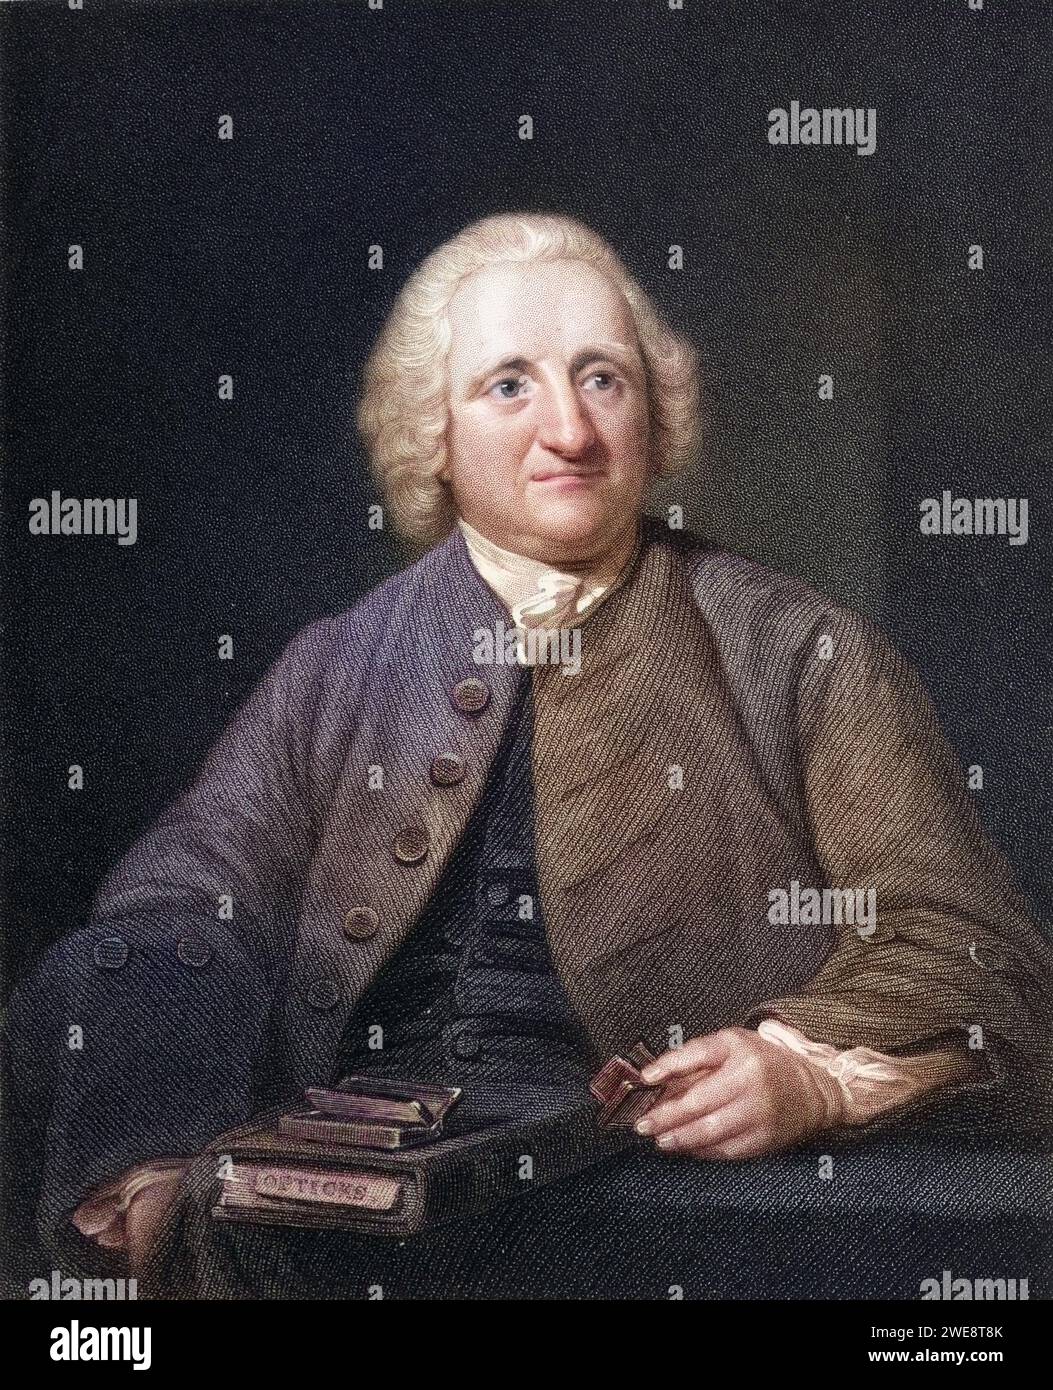 John Dollond 1706 - 1761 Englischer Optiker Aus dem Buch Gallery of Portraits, London 1833., Historisch, digital restaurierte Reproduktion von einer Vorlage aus dem 19. Jahrhundert, Record date not stated Stock Photo